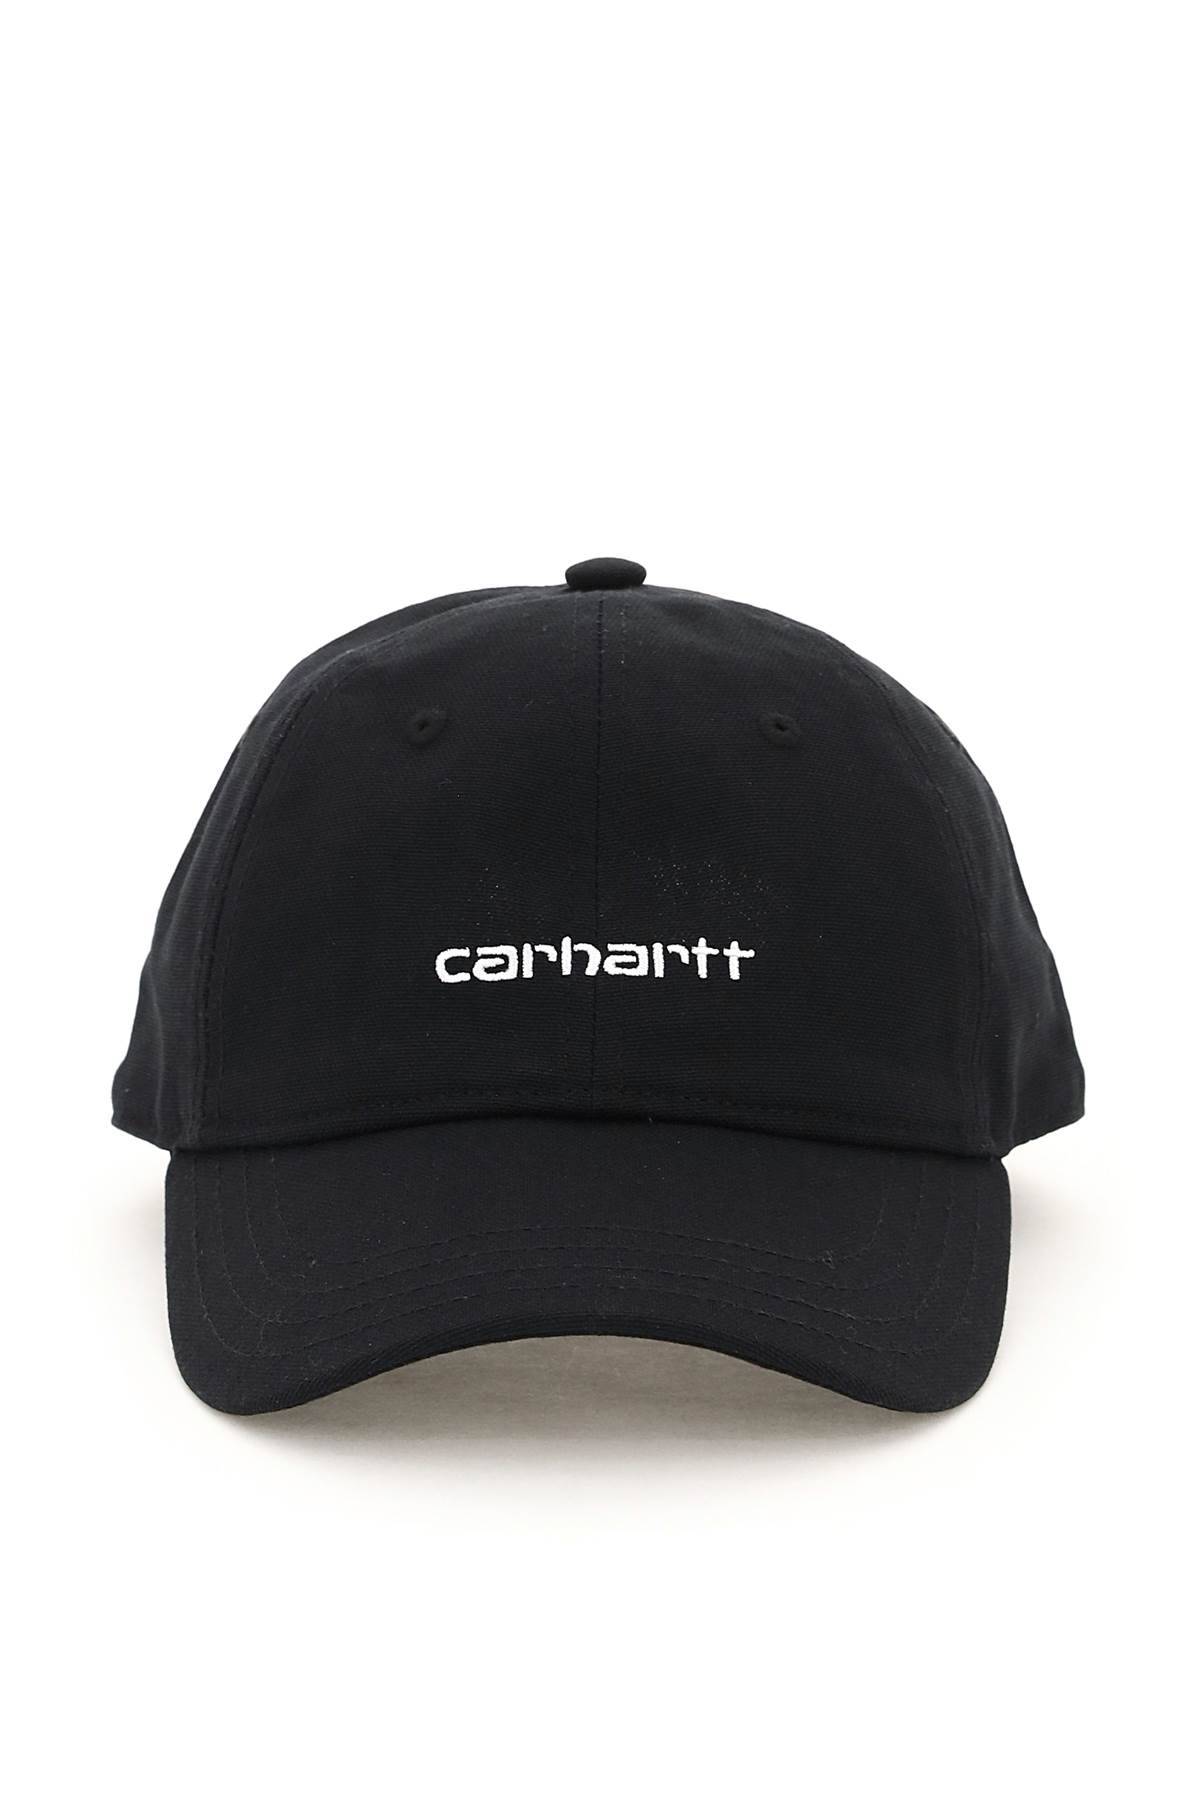 Carhartt WIP CARHARTT WIP canvas script baseball cap